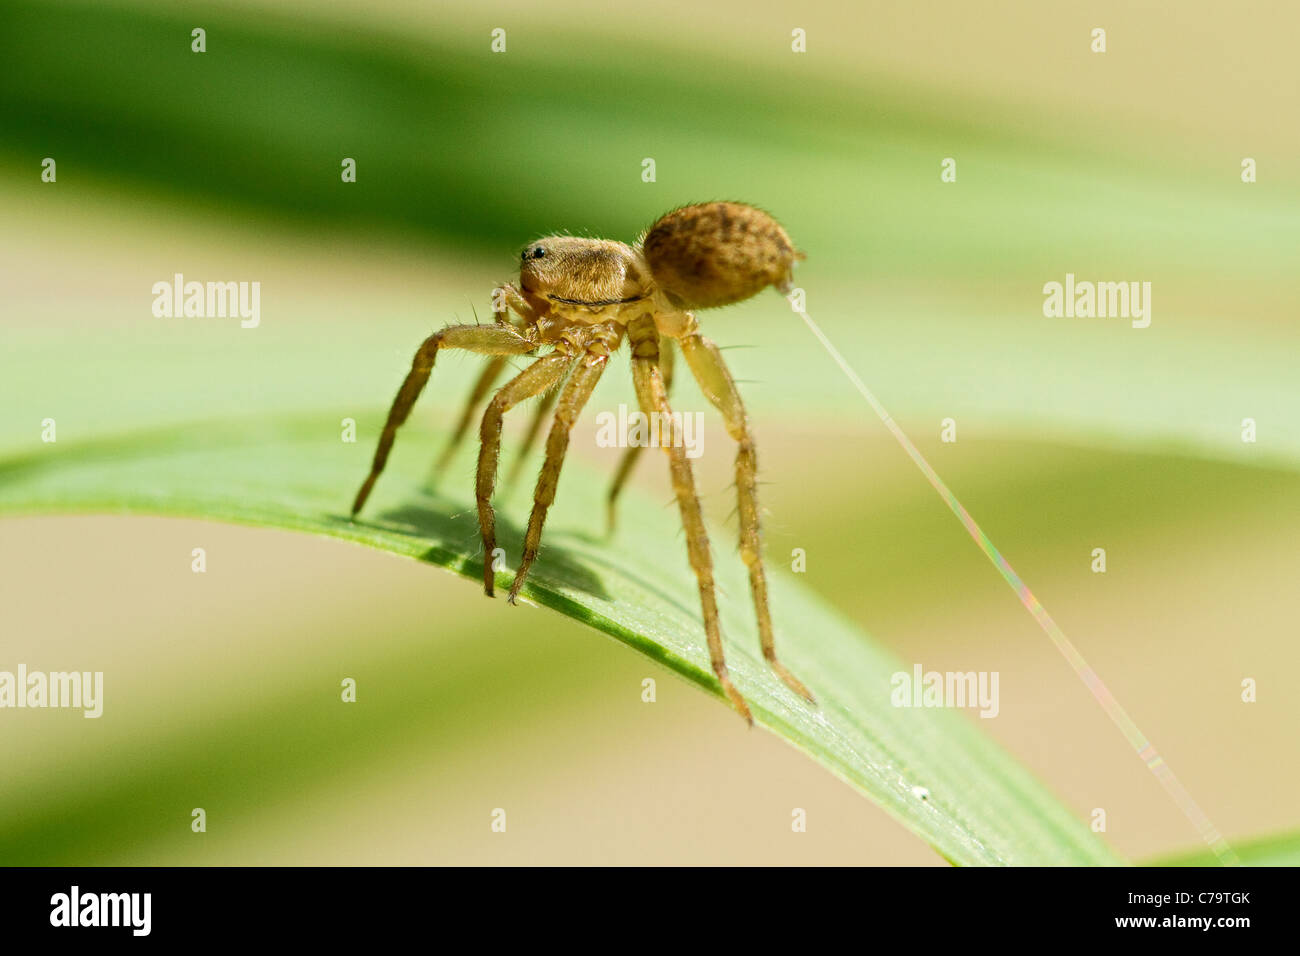 Filature et araignée araignée avec de la soie d'araignée, libre. Banque D'Images